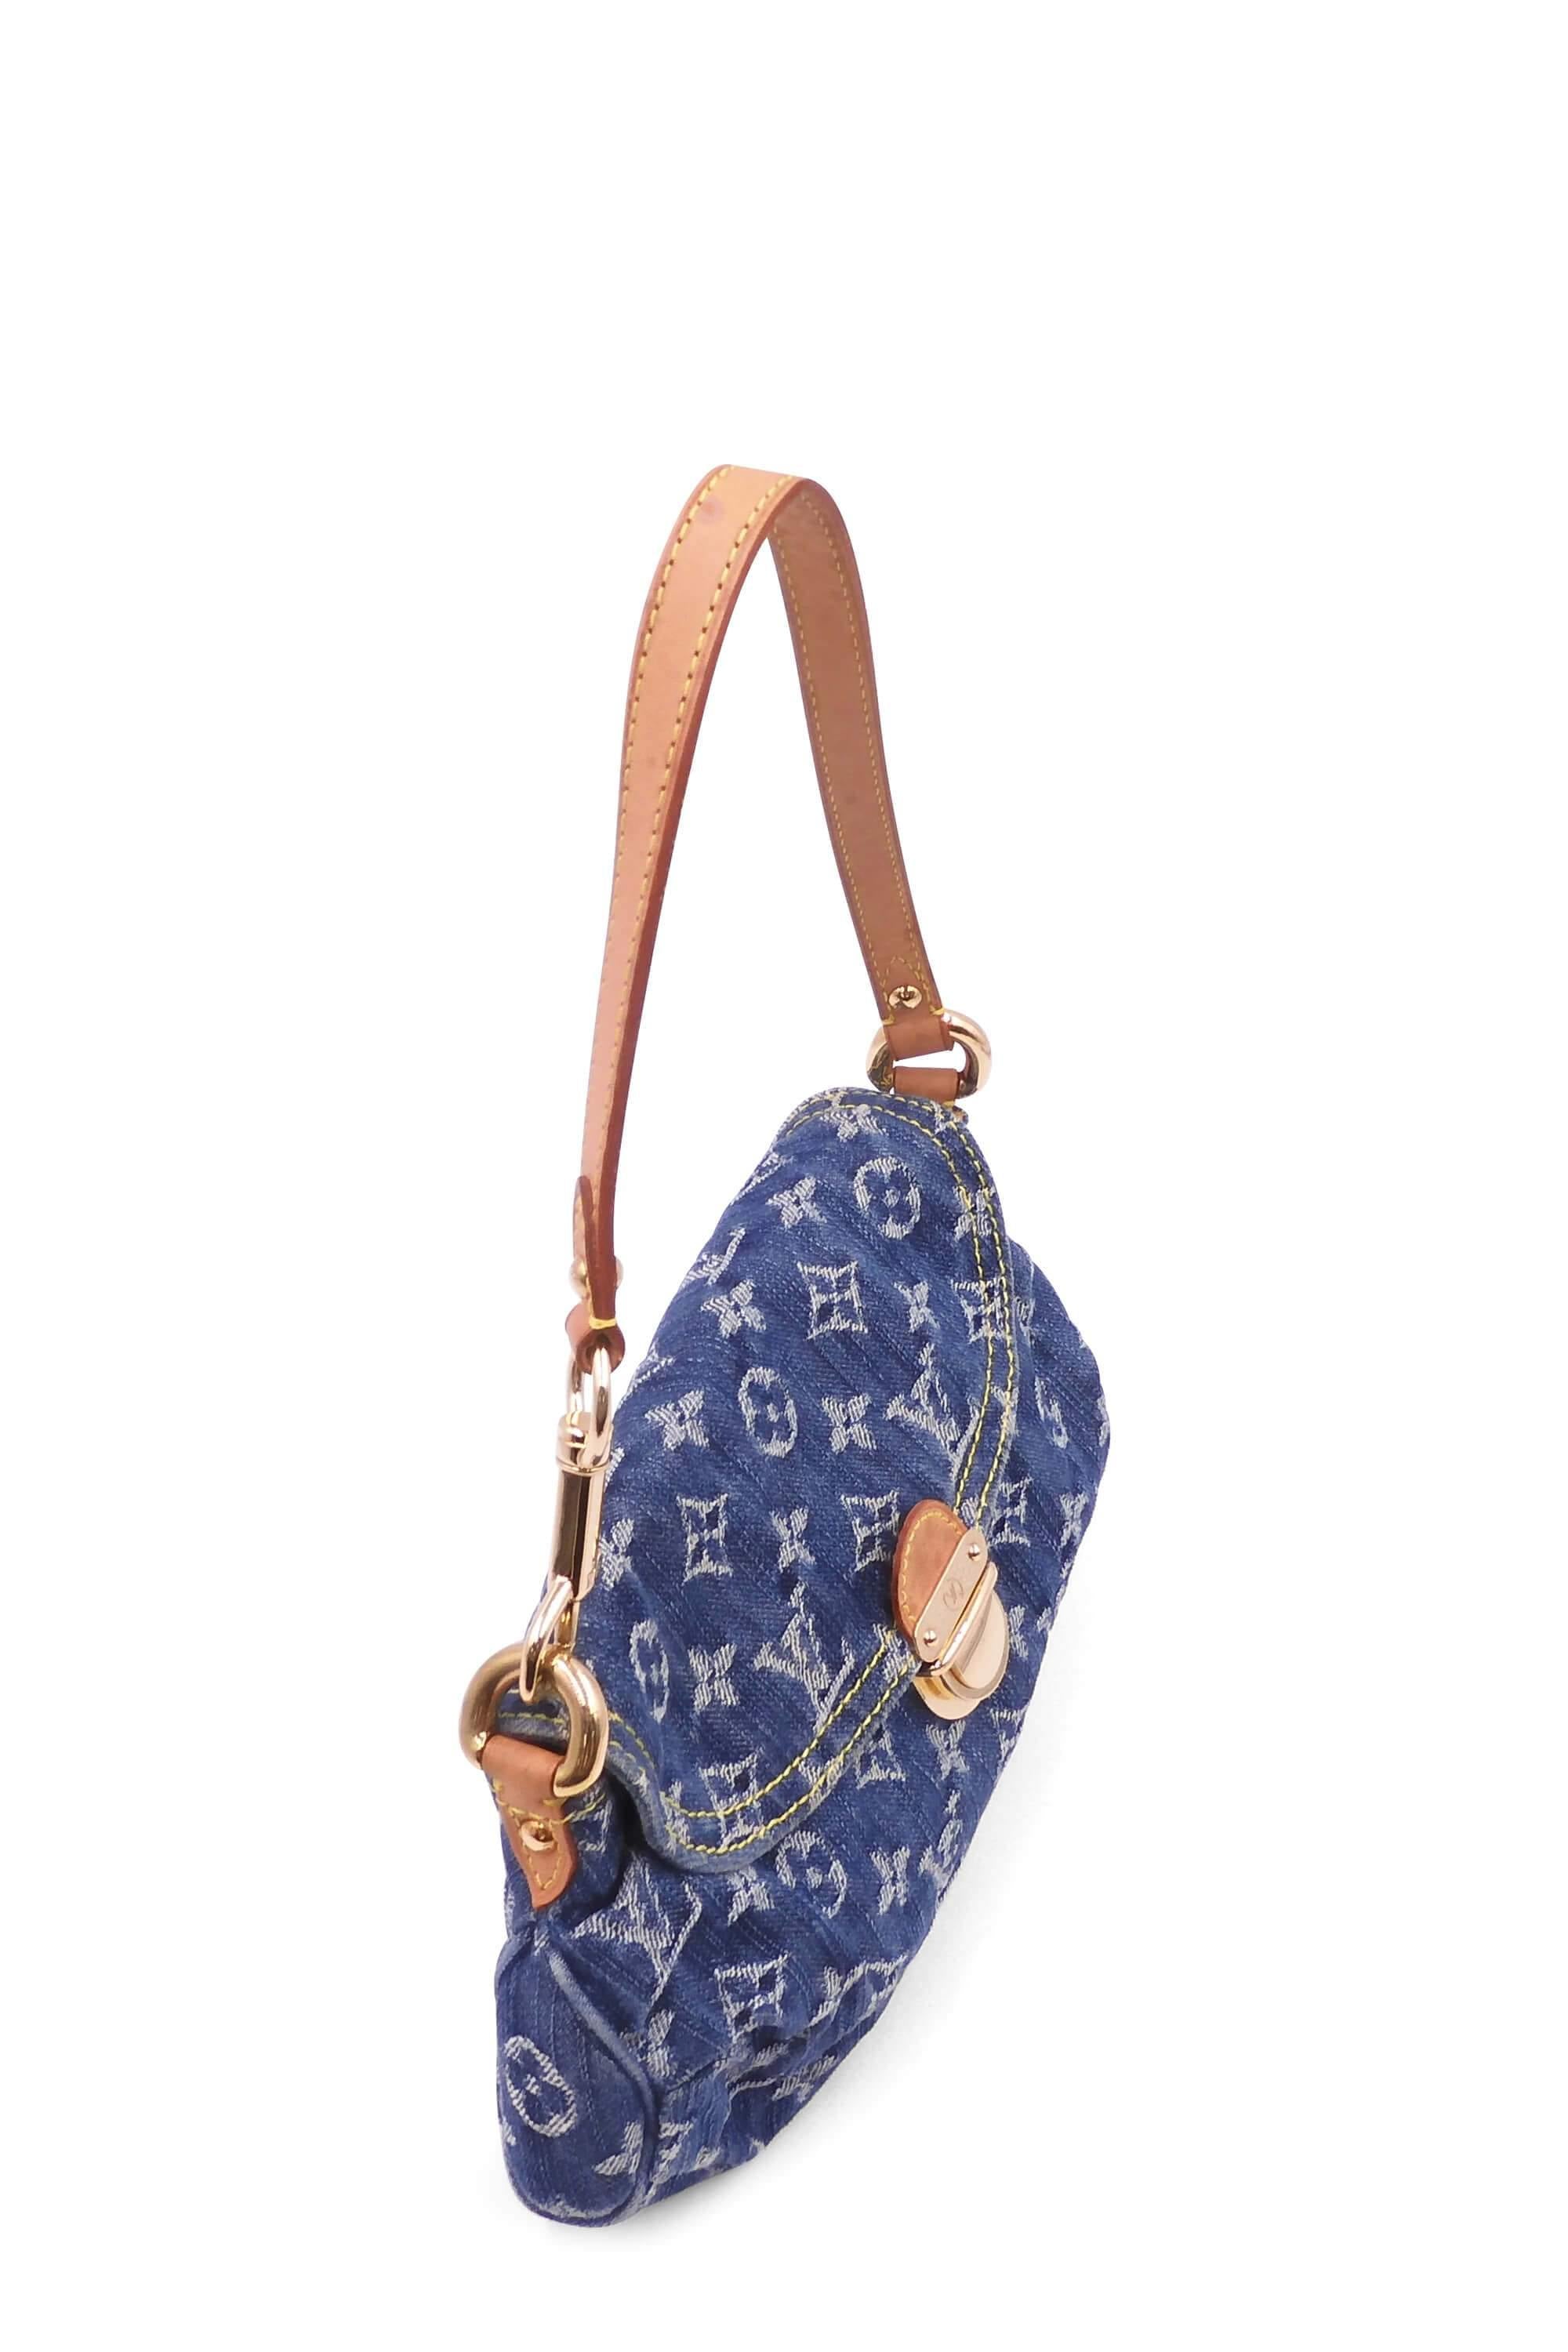 Louis Vuitton Blue Pleaty Denim Shoulder Bag - The Nostalgia Club